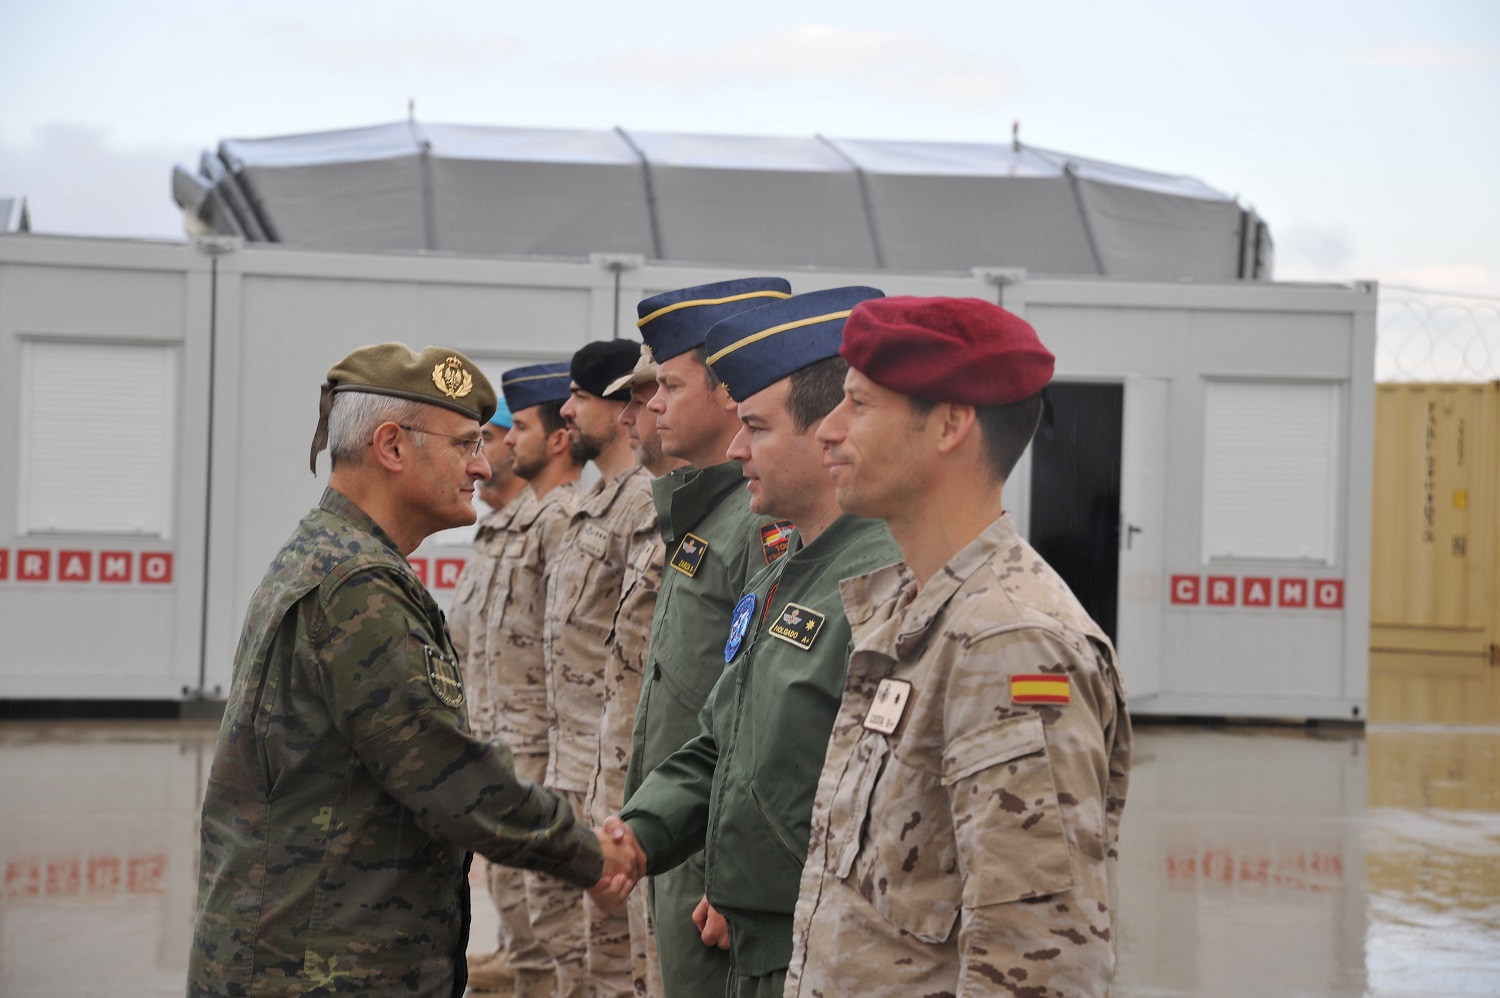 El Comandante del Mando de Operaciones muestra su apoyo a los militares desplegados en Lituania